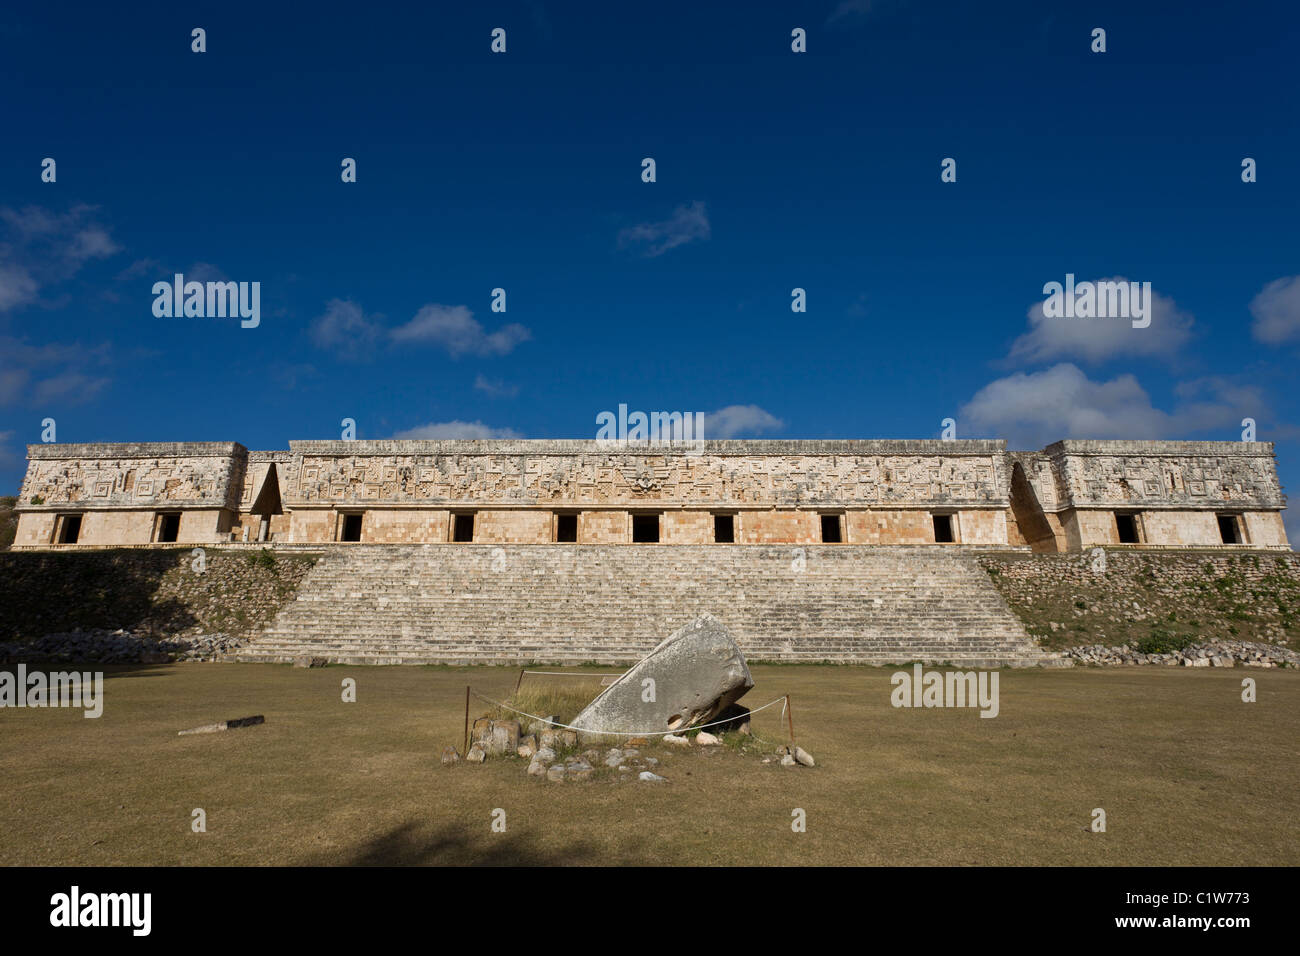 Der Palast des Gouverneurs in Uxmal ist eines der besten Beispiele der Maya Puuc-Architektur in der Yucatan Halbinsel, Mexiko. Stockfoto